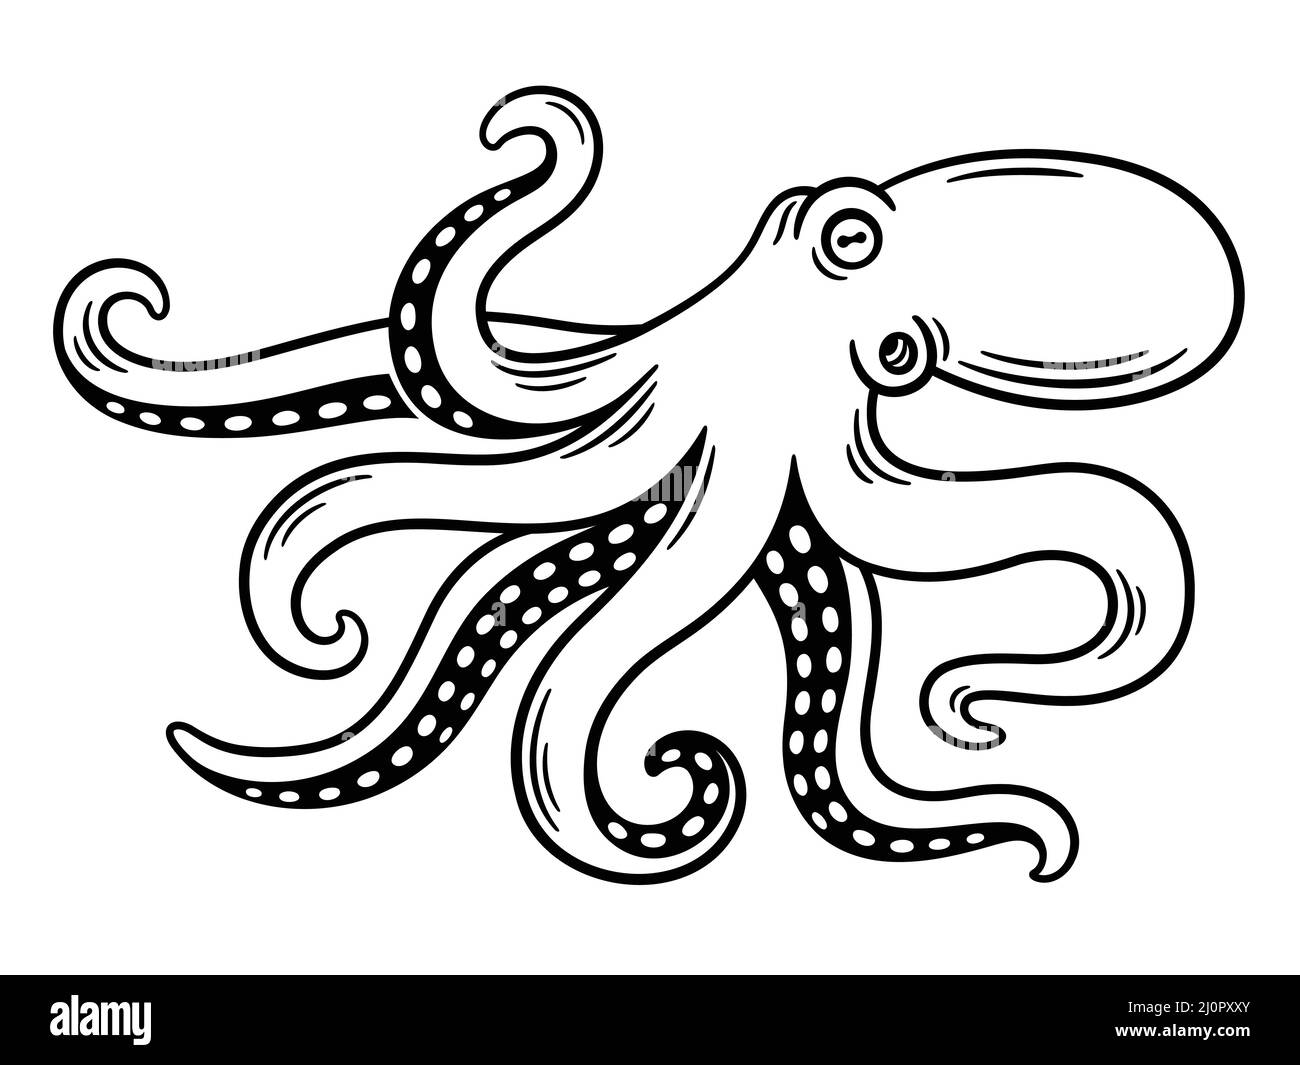 Octopus Vintage Gravur, schwarz-weiße Zeichnung. Isolierte Vektordarstellung. Stock Vektor